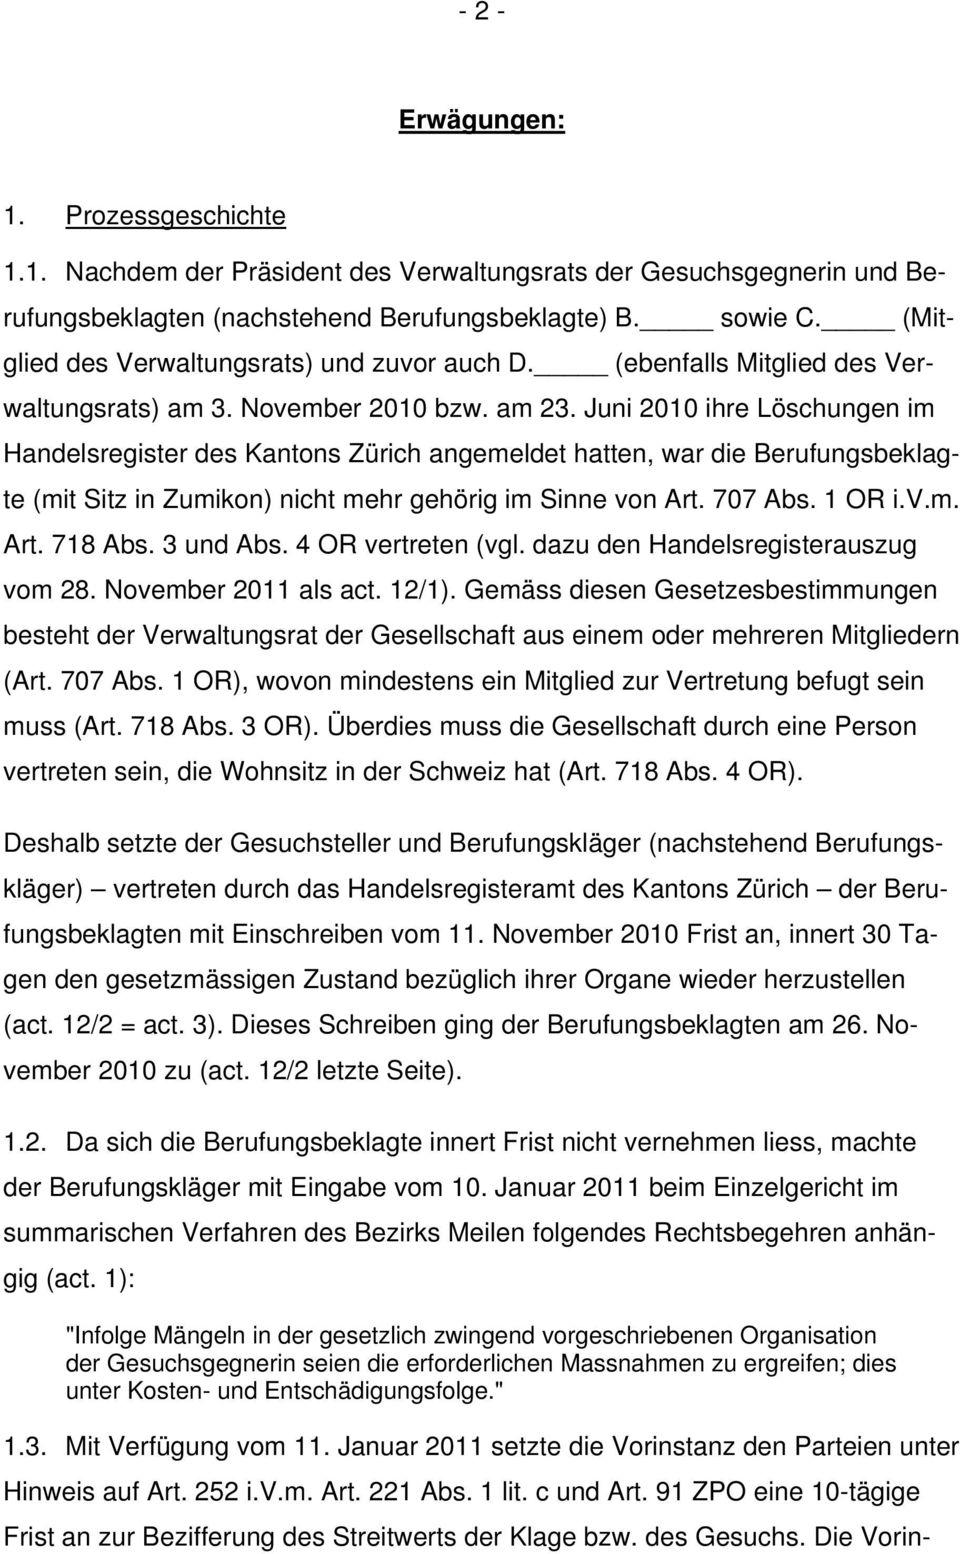 Juni 2010 ihre Löschungen im Handelsregister des Kantons Zürich angemeldet hatten, war die Berufungsbeklagte (mit Sitz in Zumikon) nicht mehr gehörig im Sinne von Art. 707 Abs. 1 OR i.v.m. Art. 718 Abs.